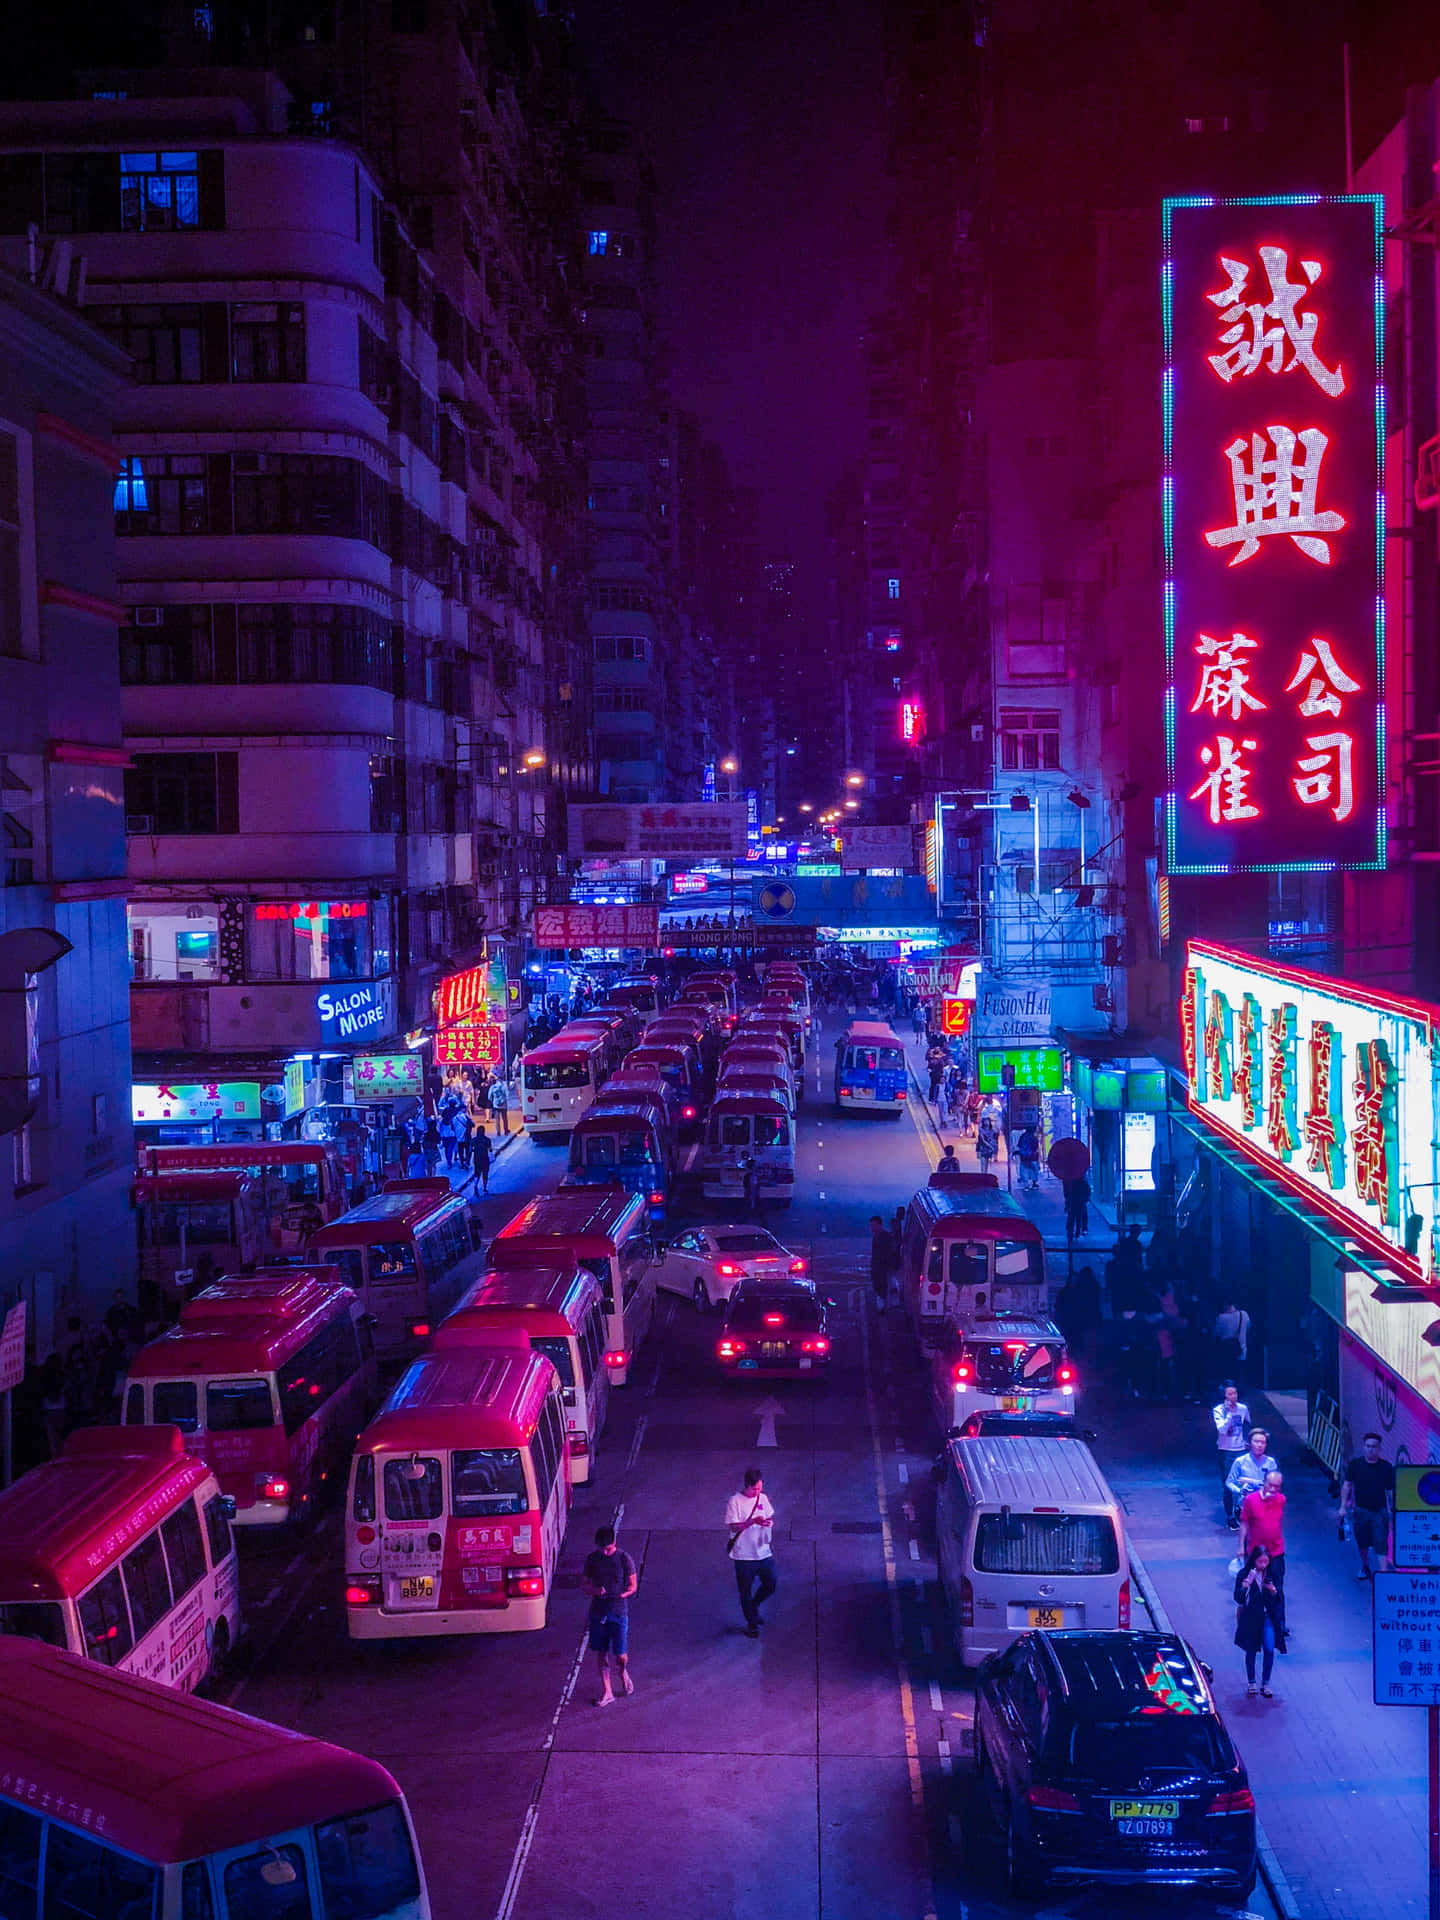 Hongkongbillede På 2891 X 3854